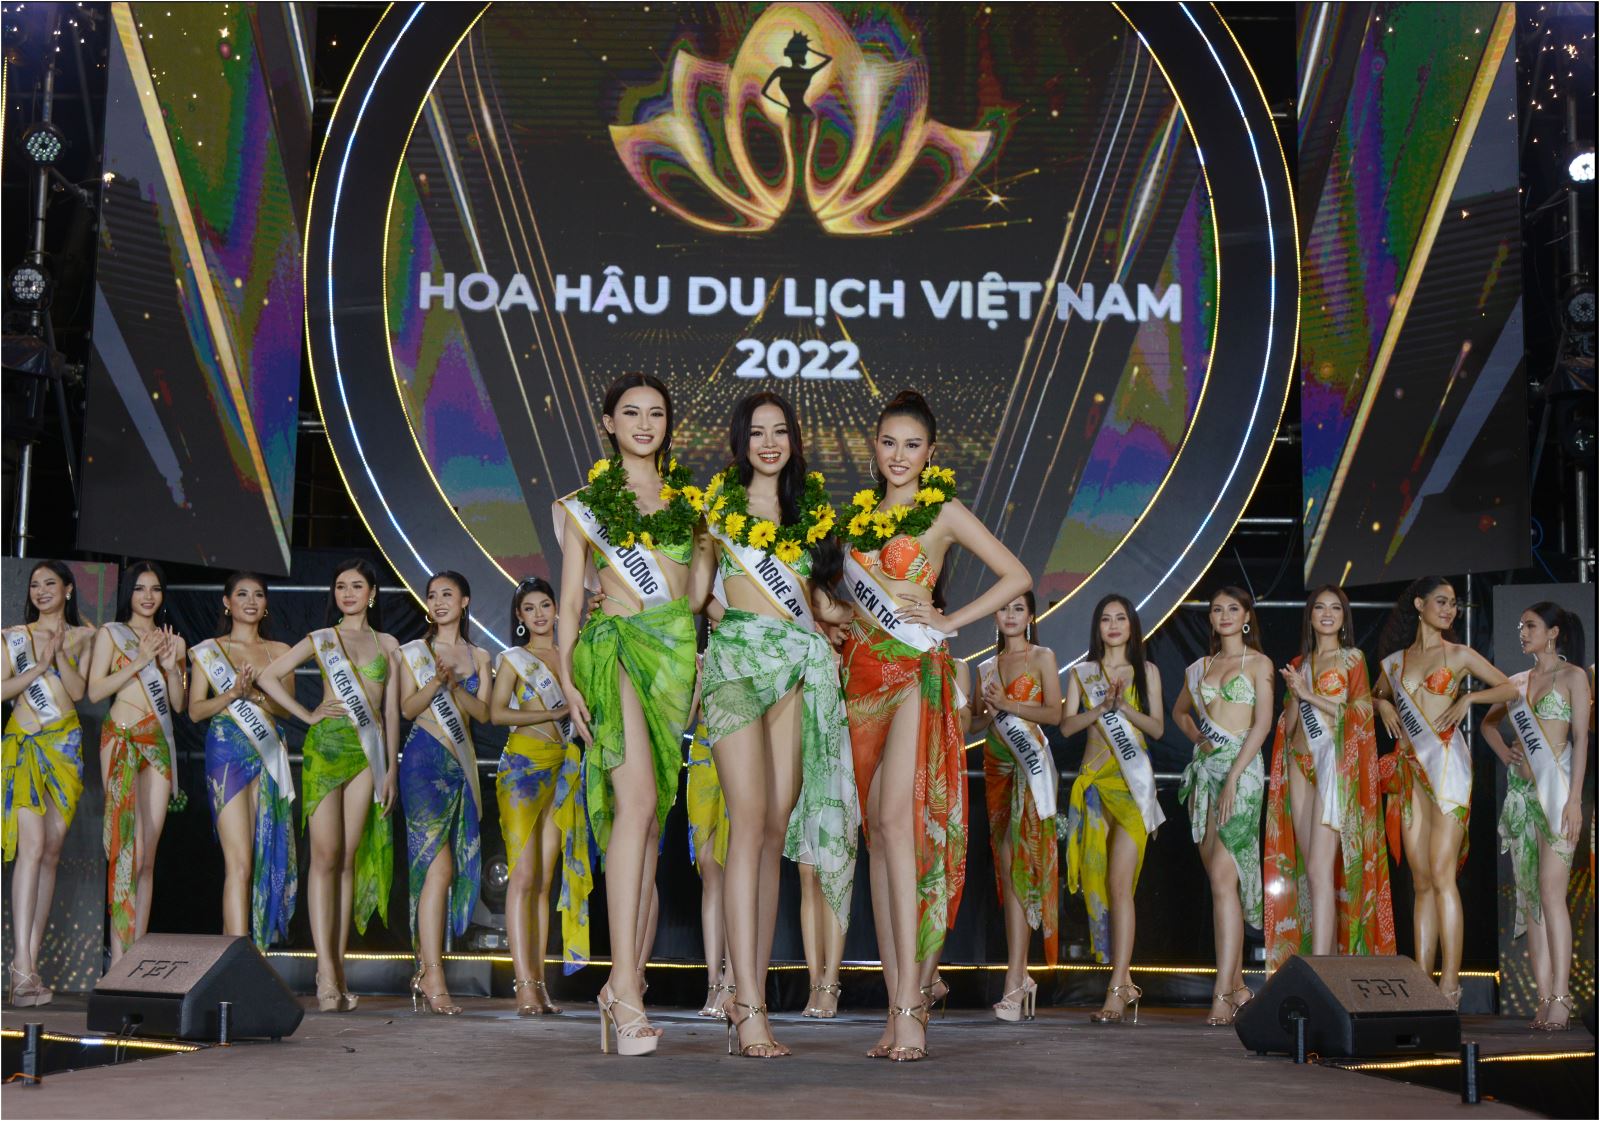 Dàn thí sinh Hoa hậu Du lịch Việt Nam khoe dáng nóng bỏng với bikini trong đêm thi 'Người đẹp biển' - Ảnh 6.